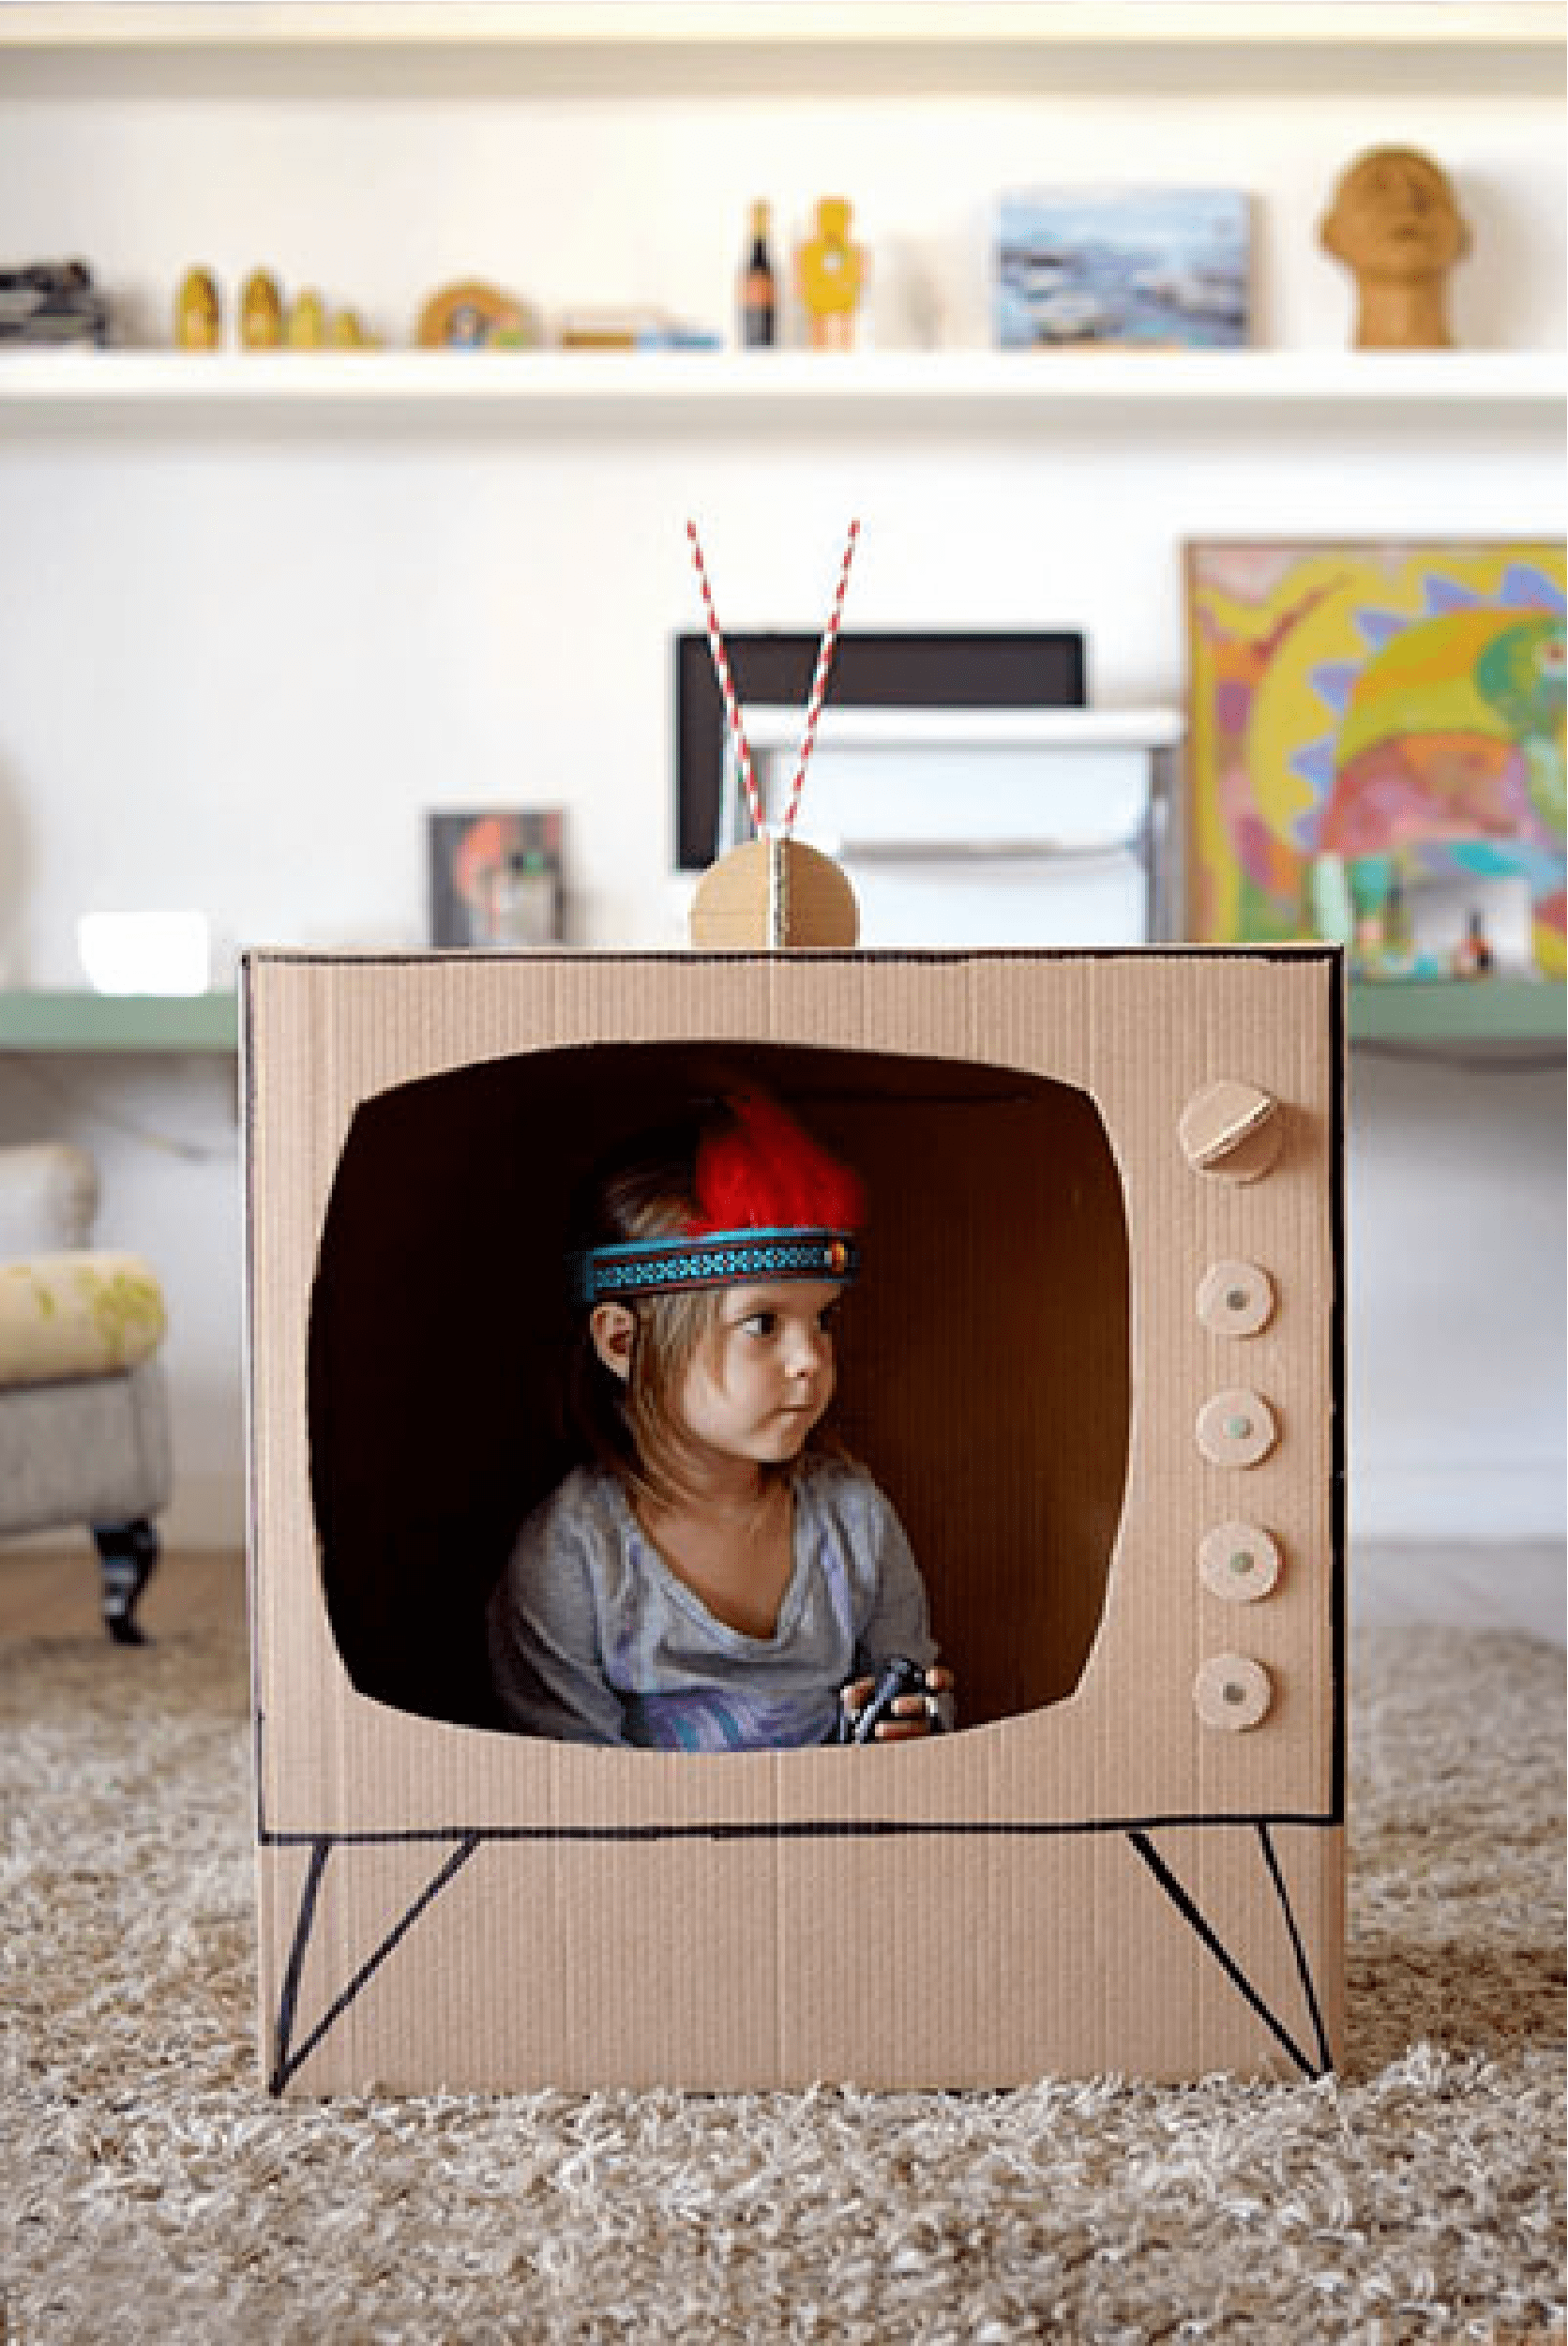 kids inside tv box for entertainment